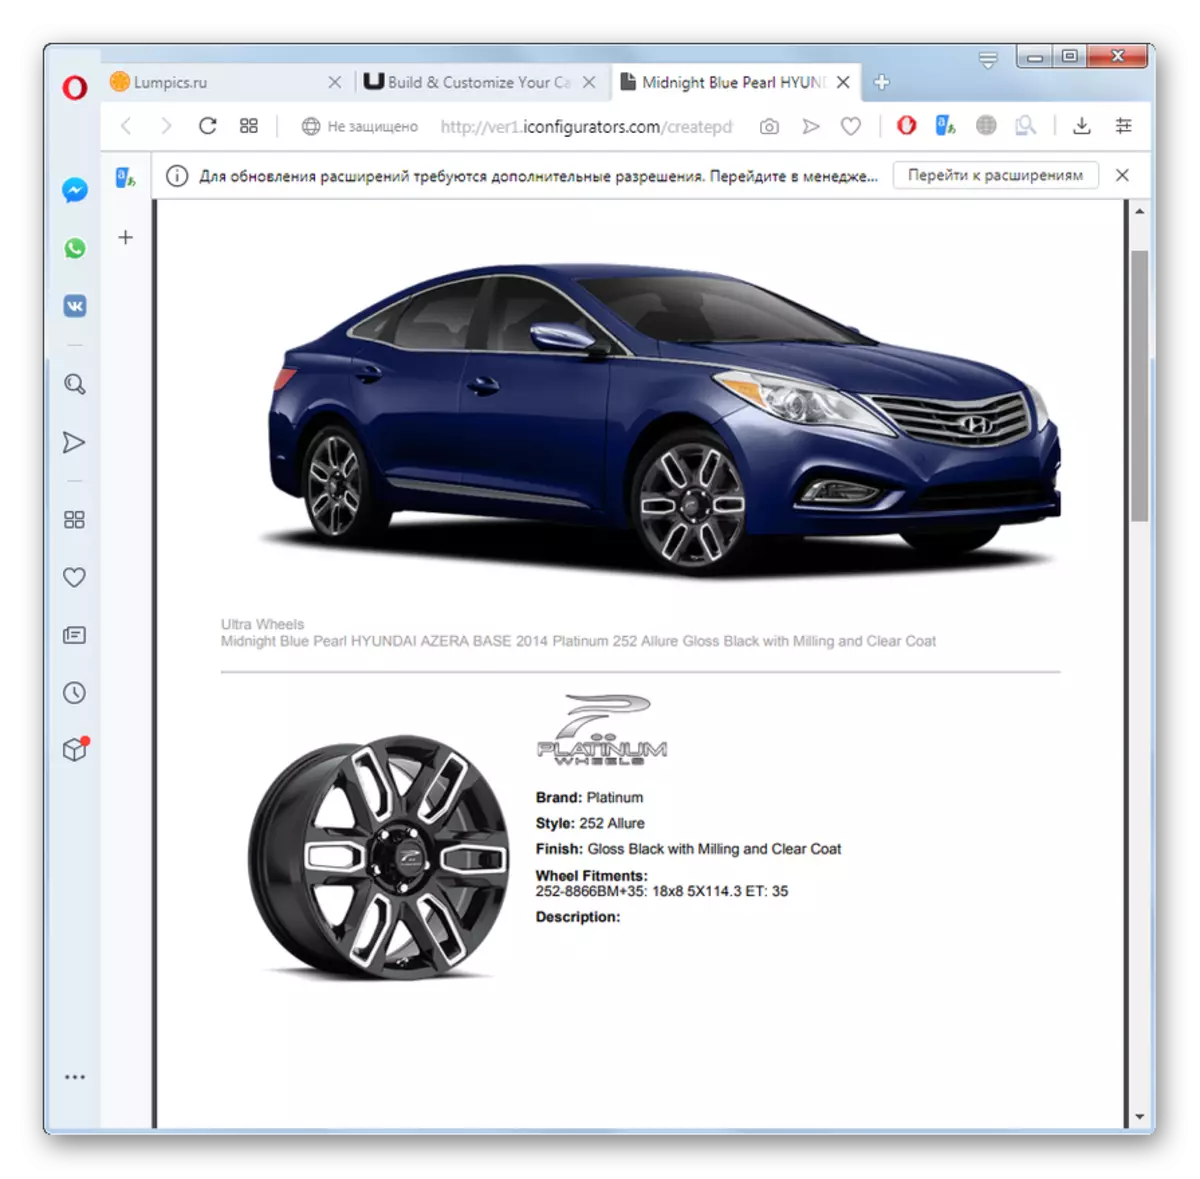 Trang đã lưu với xe ảo trên trang web Ultrawheel trong trình duyệt Opera